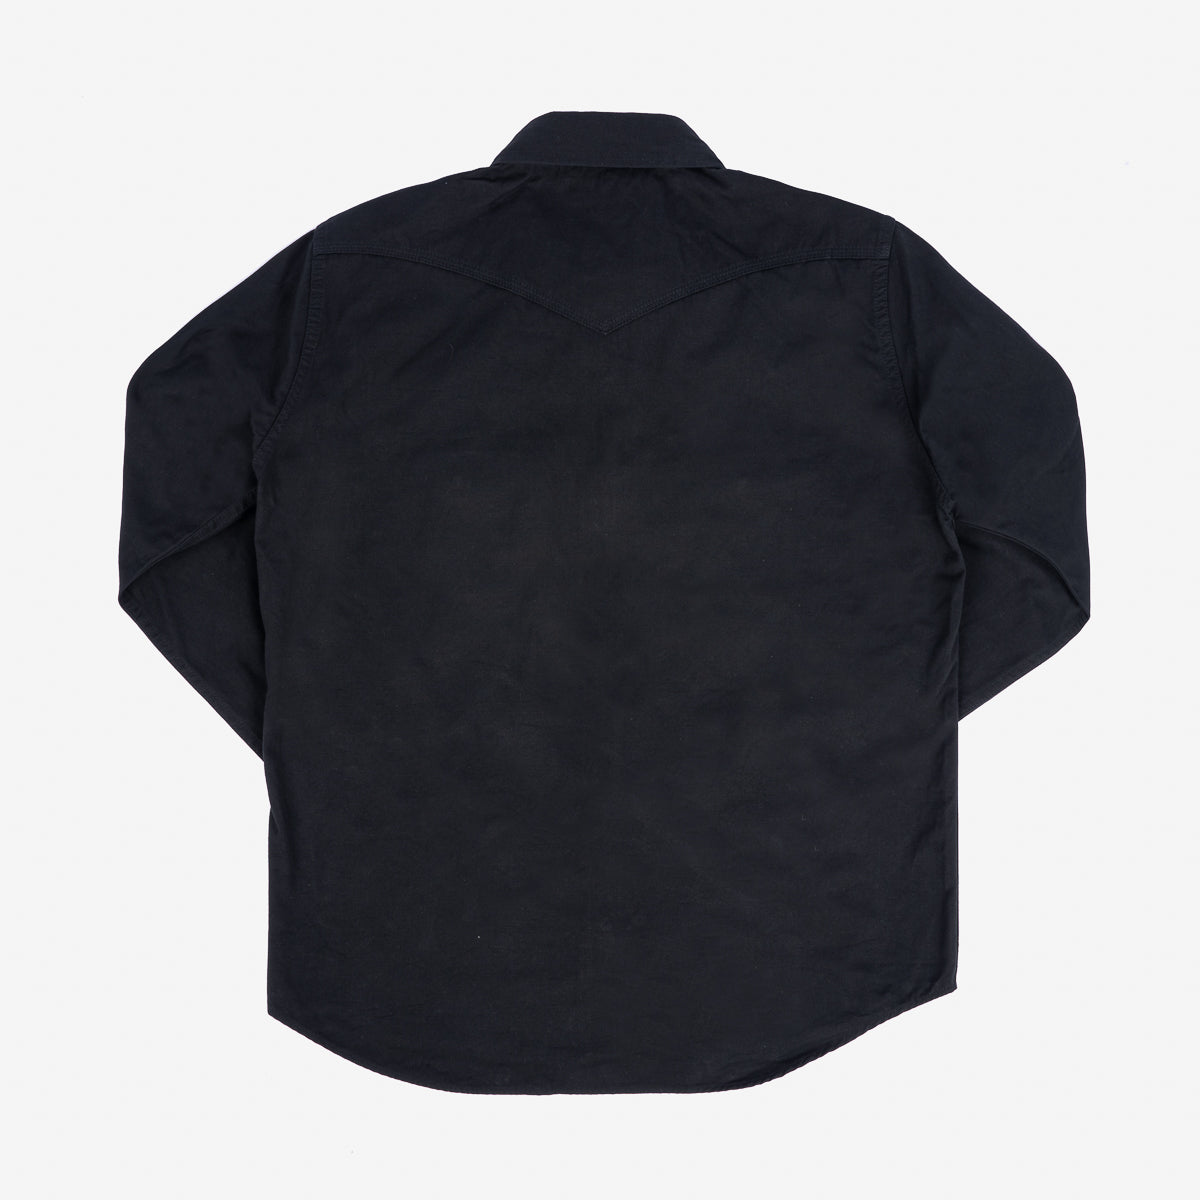 IHSH-394-BLK - 7oz Fatigue Cloth Western Shirt - Black